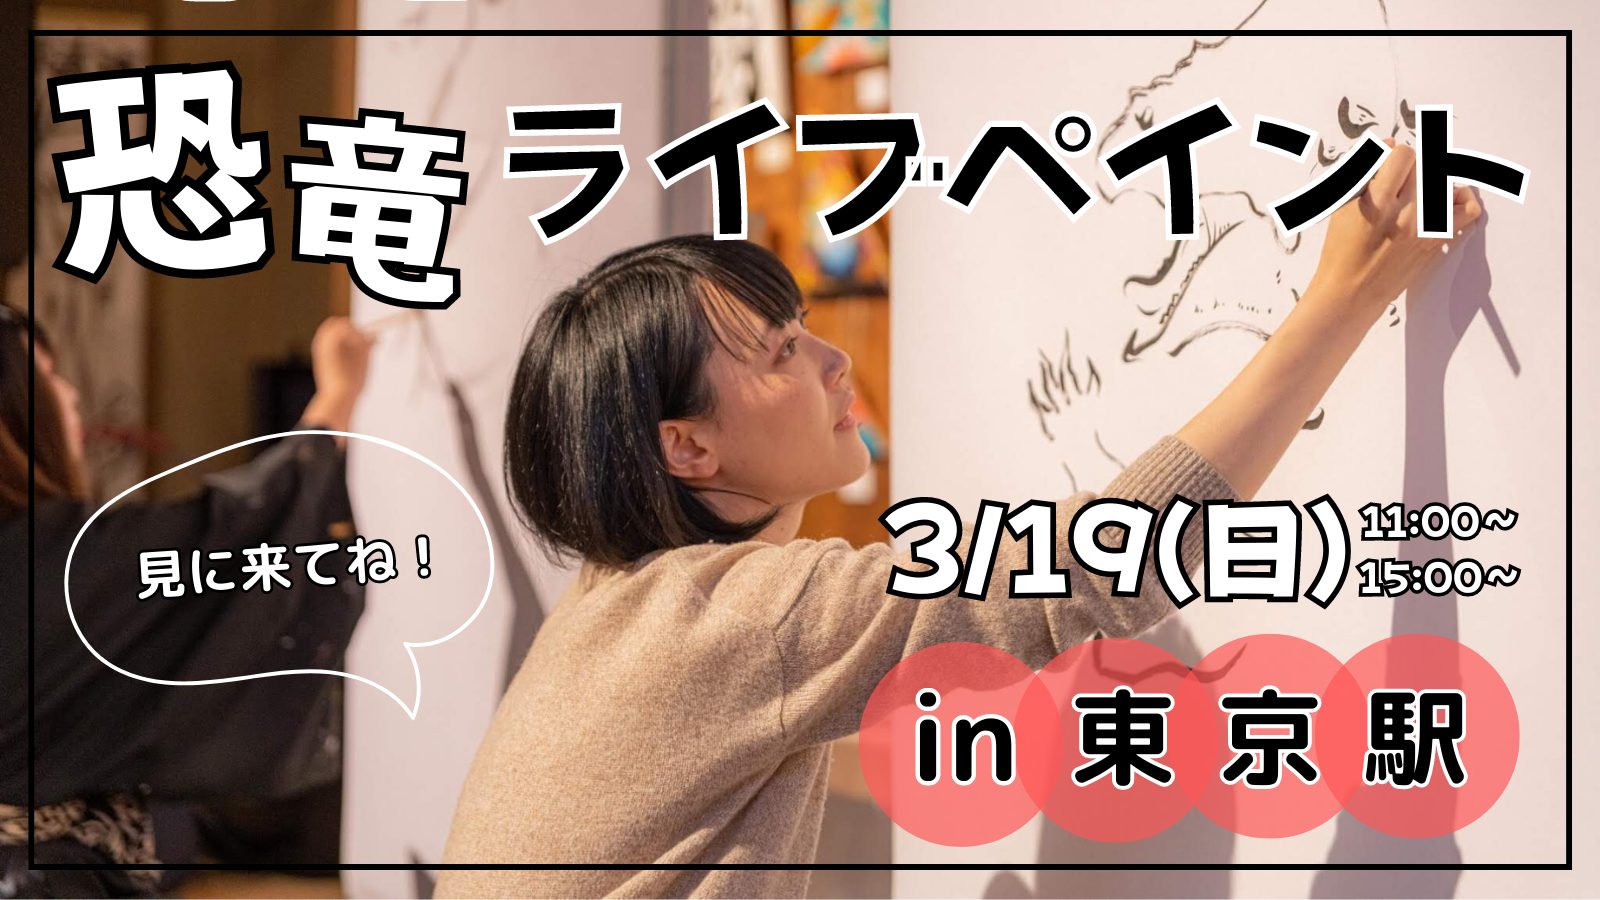 3/19(日)東京駅改札内イベント「HAND ! MARKET」で恐竜ライブペイント開催